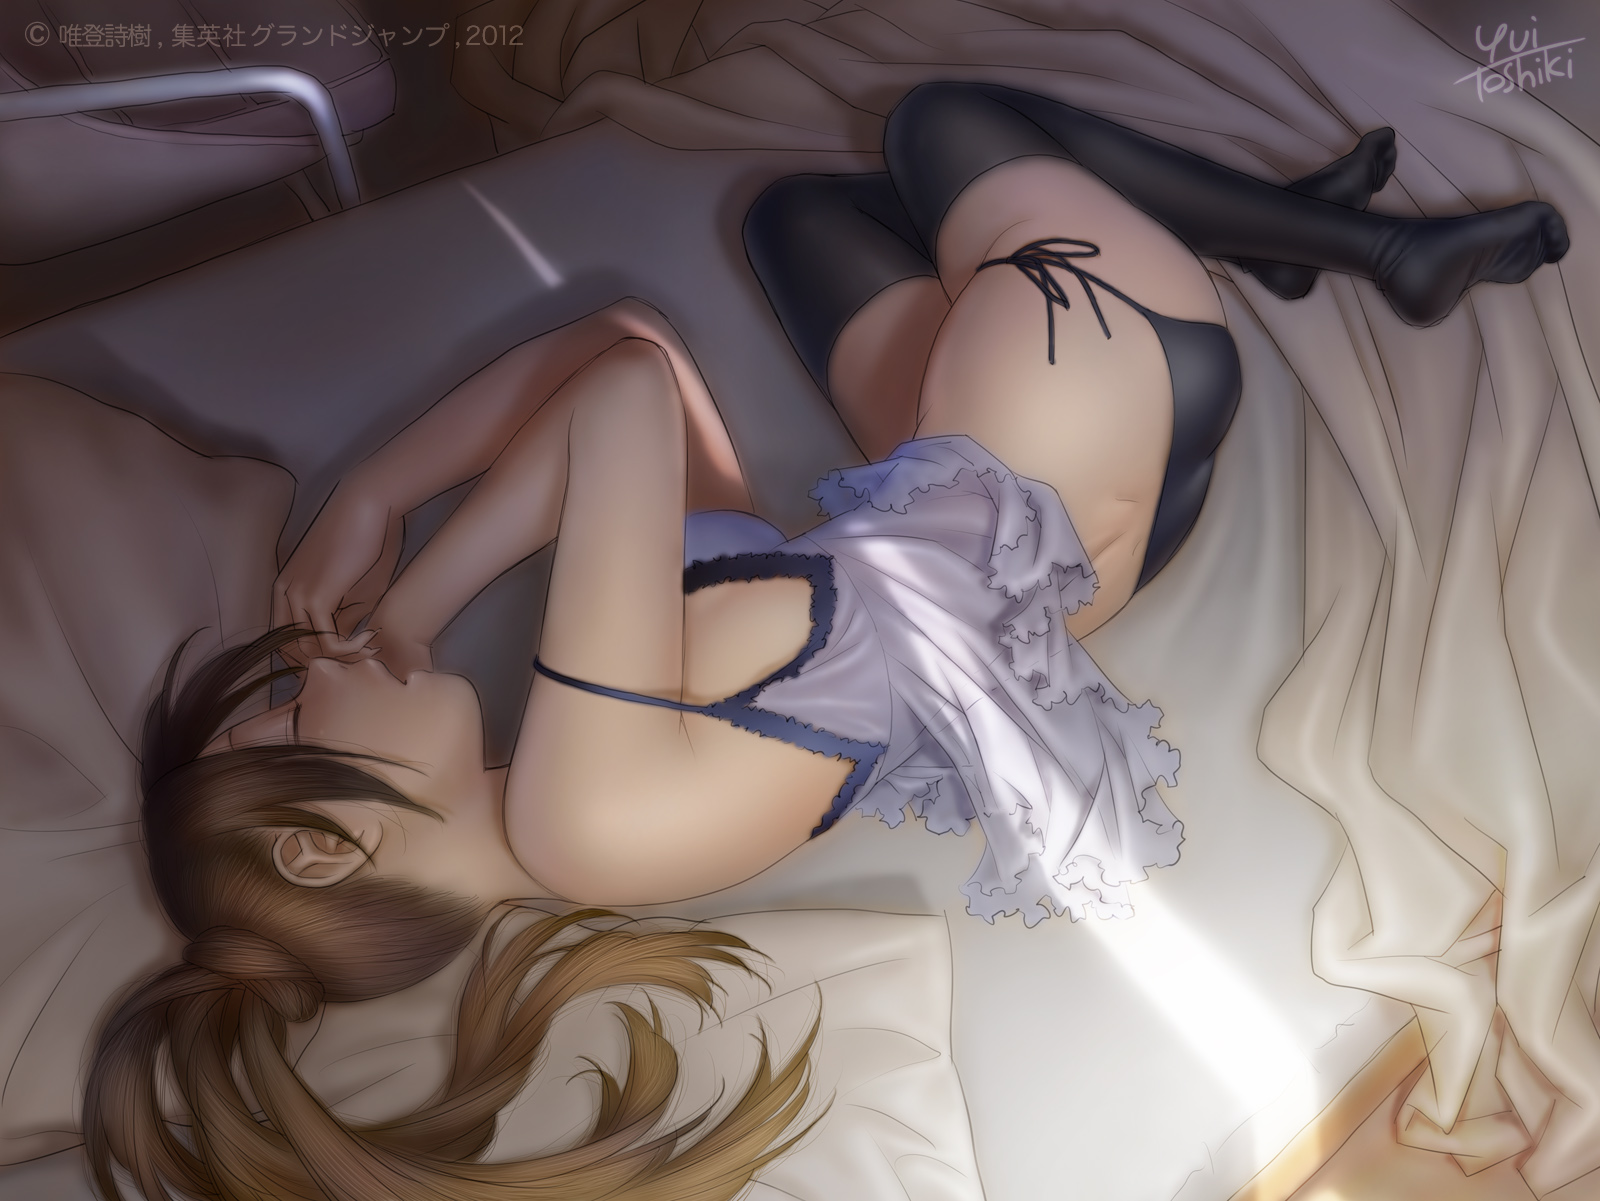 аниме картинка спящая аниме девушка художник yui toshiki